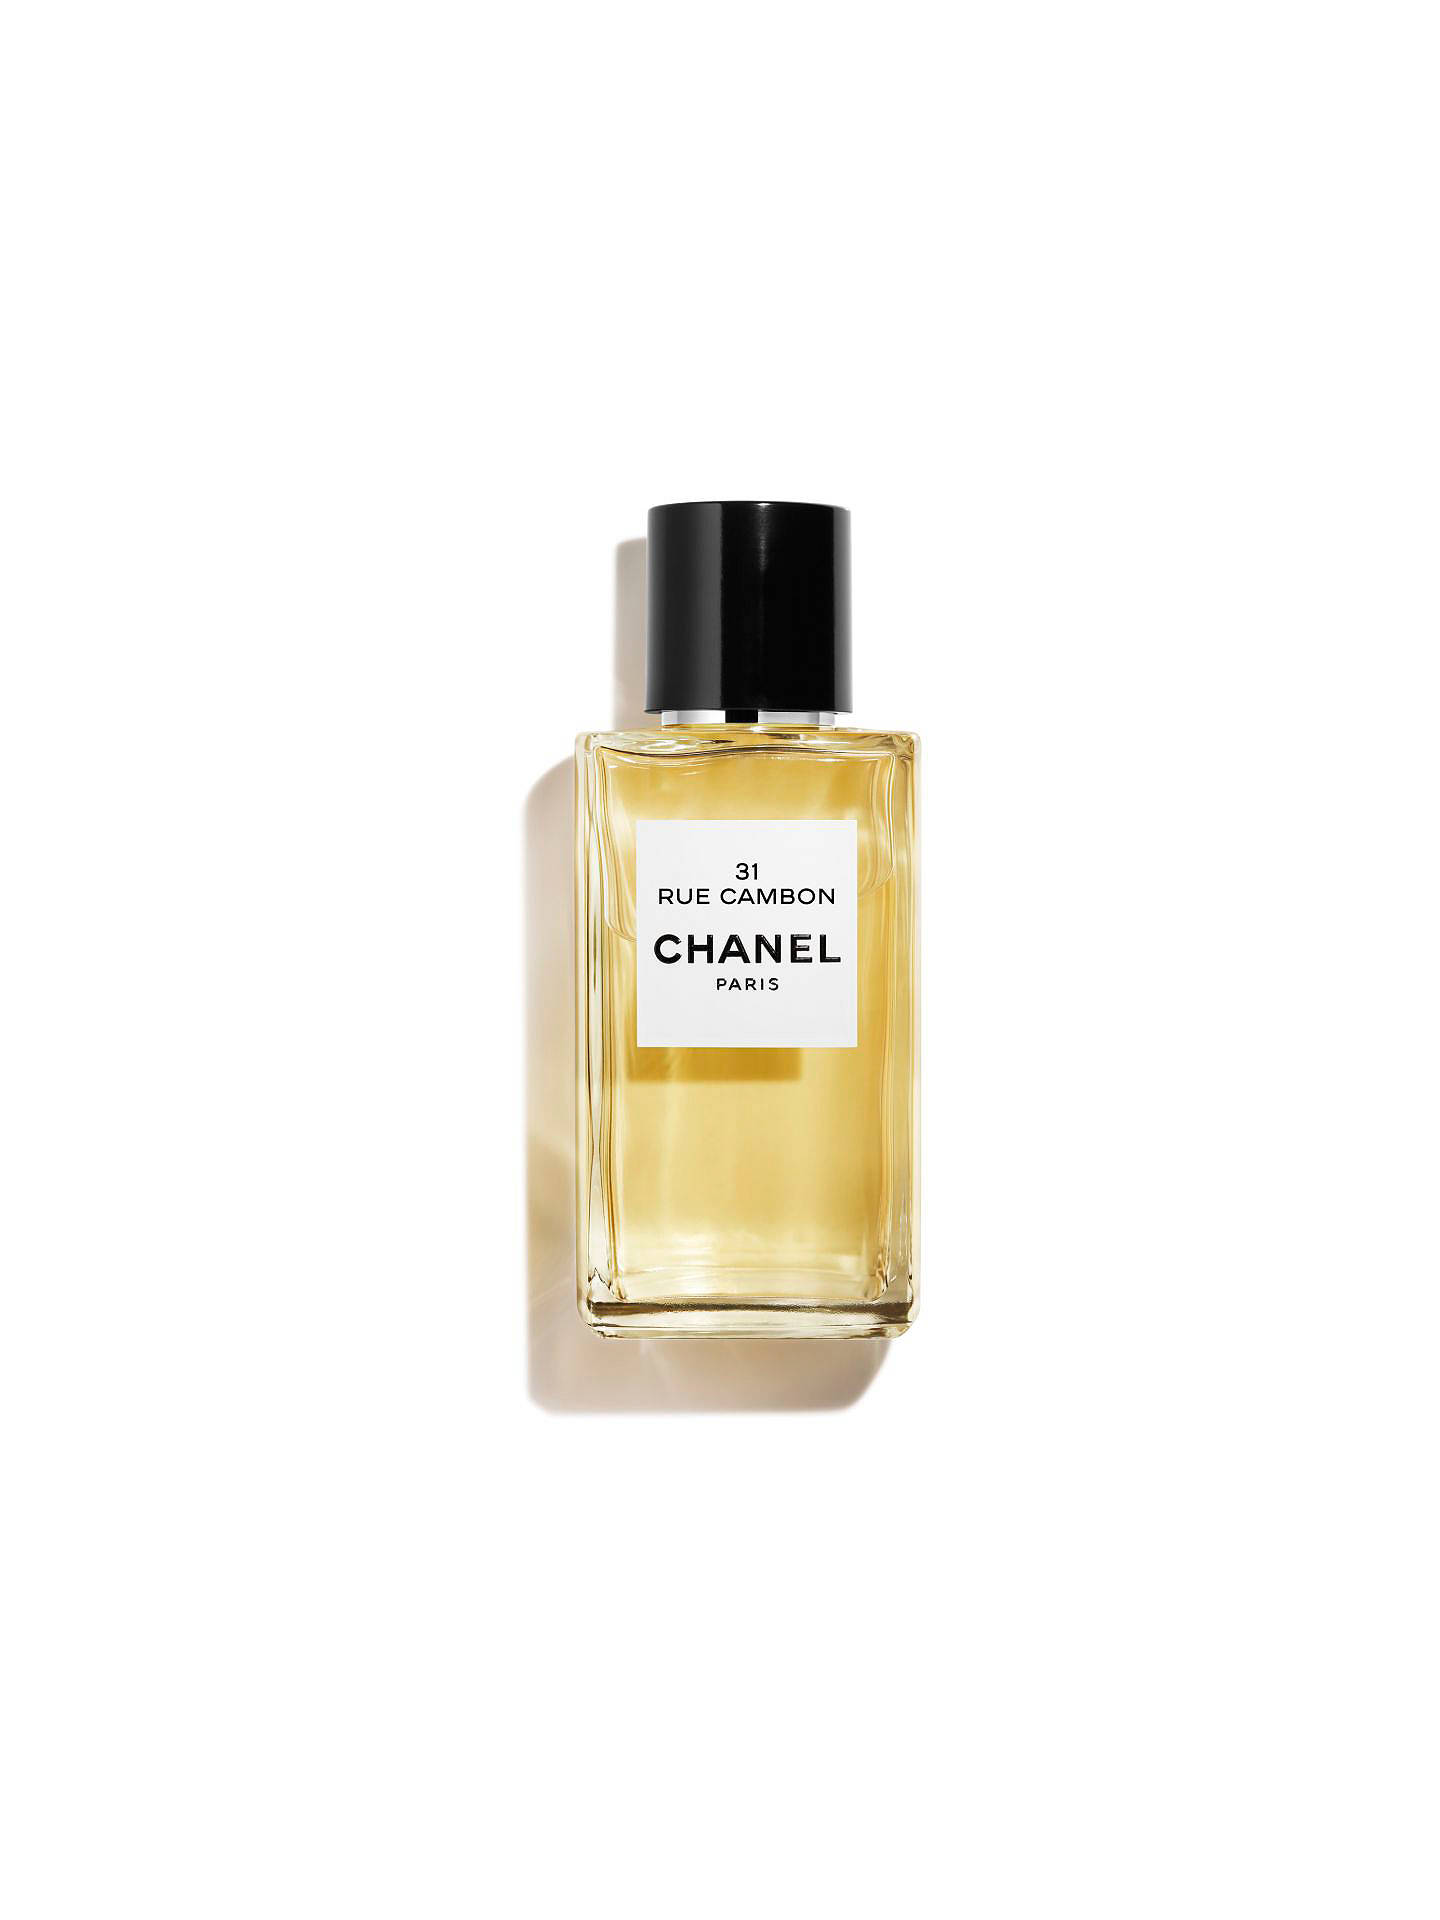 CHANEL LES EXCLUSIFS DE CHANEL 31 Rue Cambon Eau de Parfum at John ...